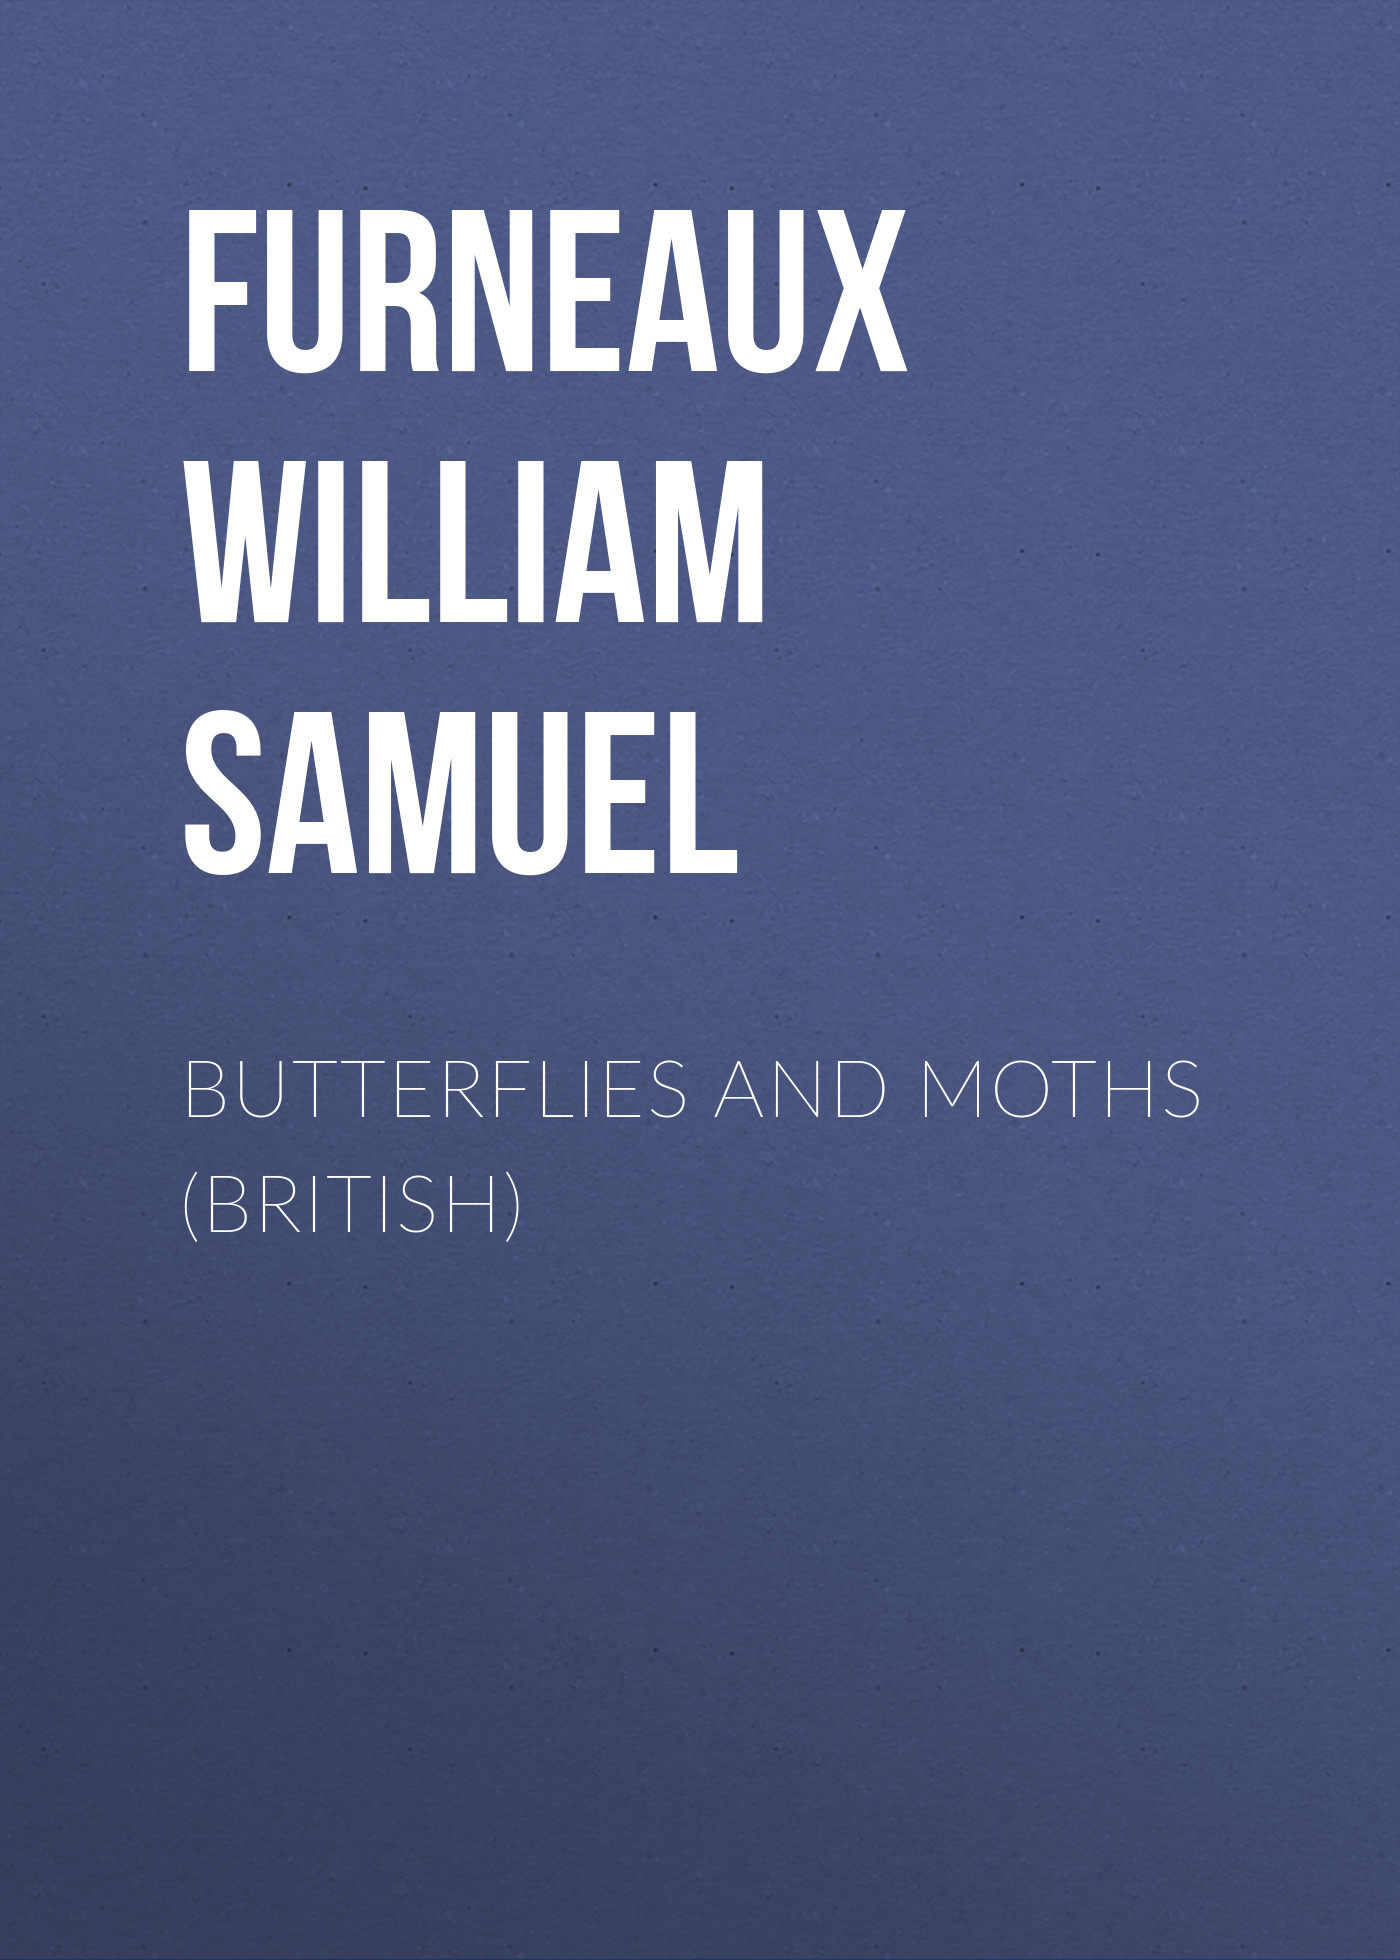 Книга Butterflies and Moths (British) из серии , созданная William Furneaux, может относится к жанру Природа и животные, Зарубежная старинная литература, Зарубежная классика. Стоимость электронной книги Butterflies and Moths (British) с идентификатором 24859051 составляет 0 руб.